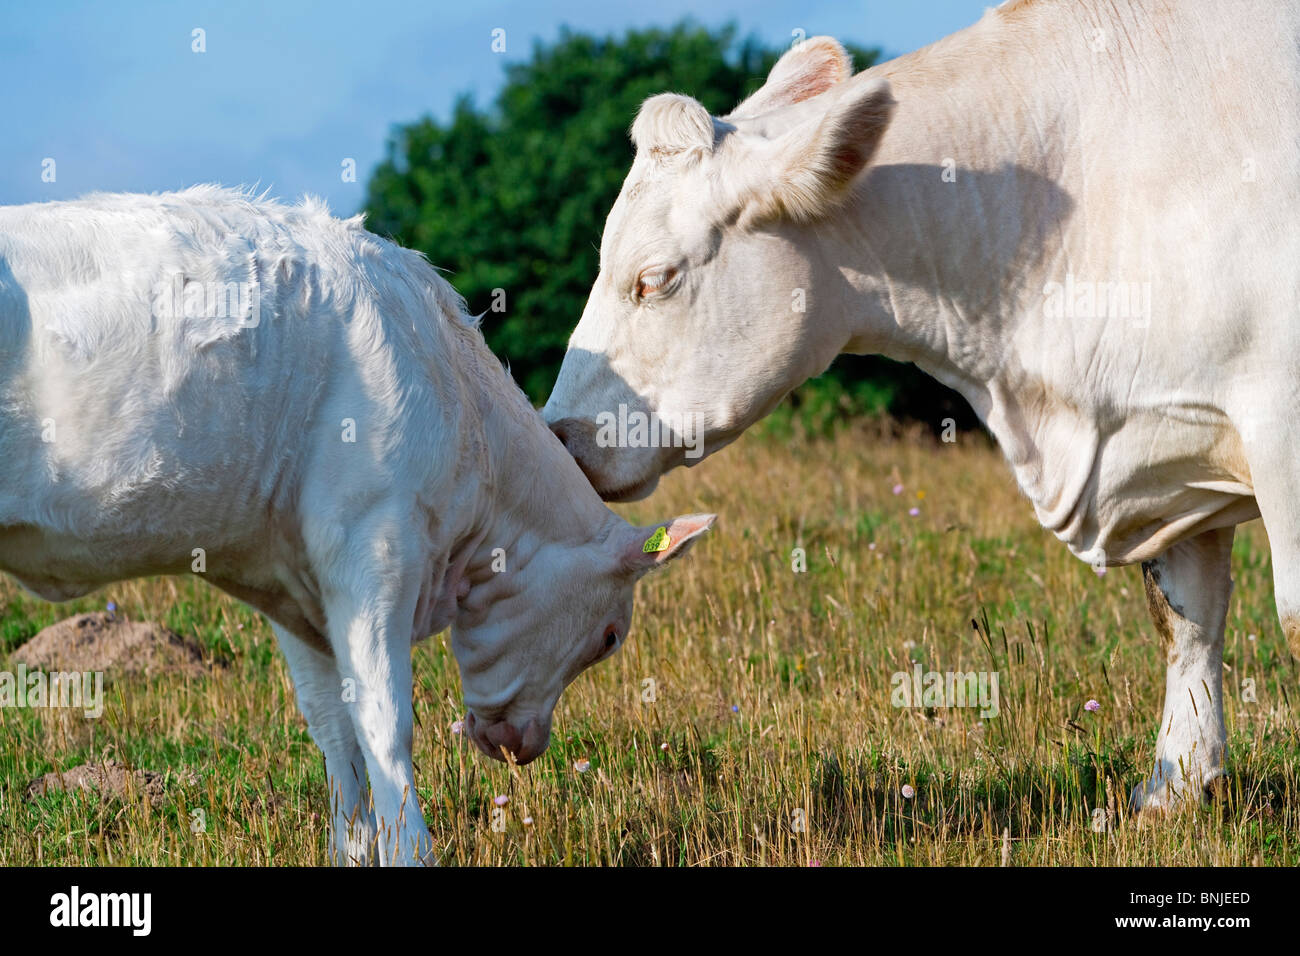 Schweden Skane Landwirtschaft Tier Kalb Kälber Rinder Kuh Kühe Tag Europa außen Nutztiere Grass Grünland Landwirtschaft Stockfoto